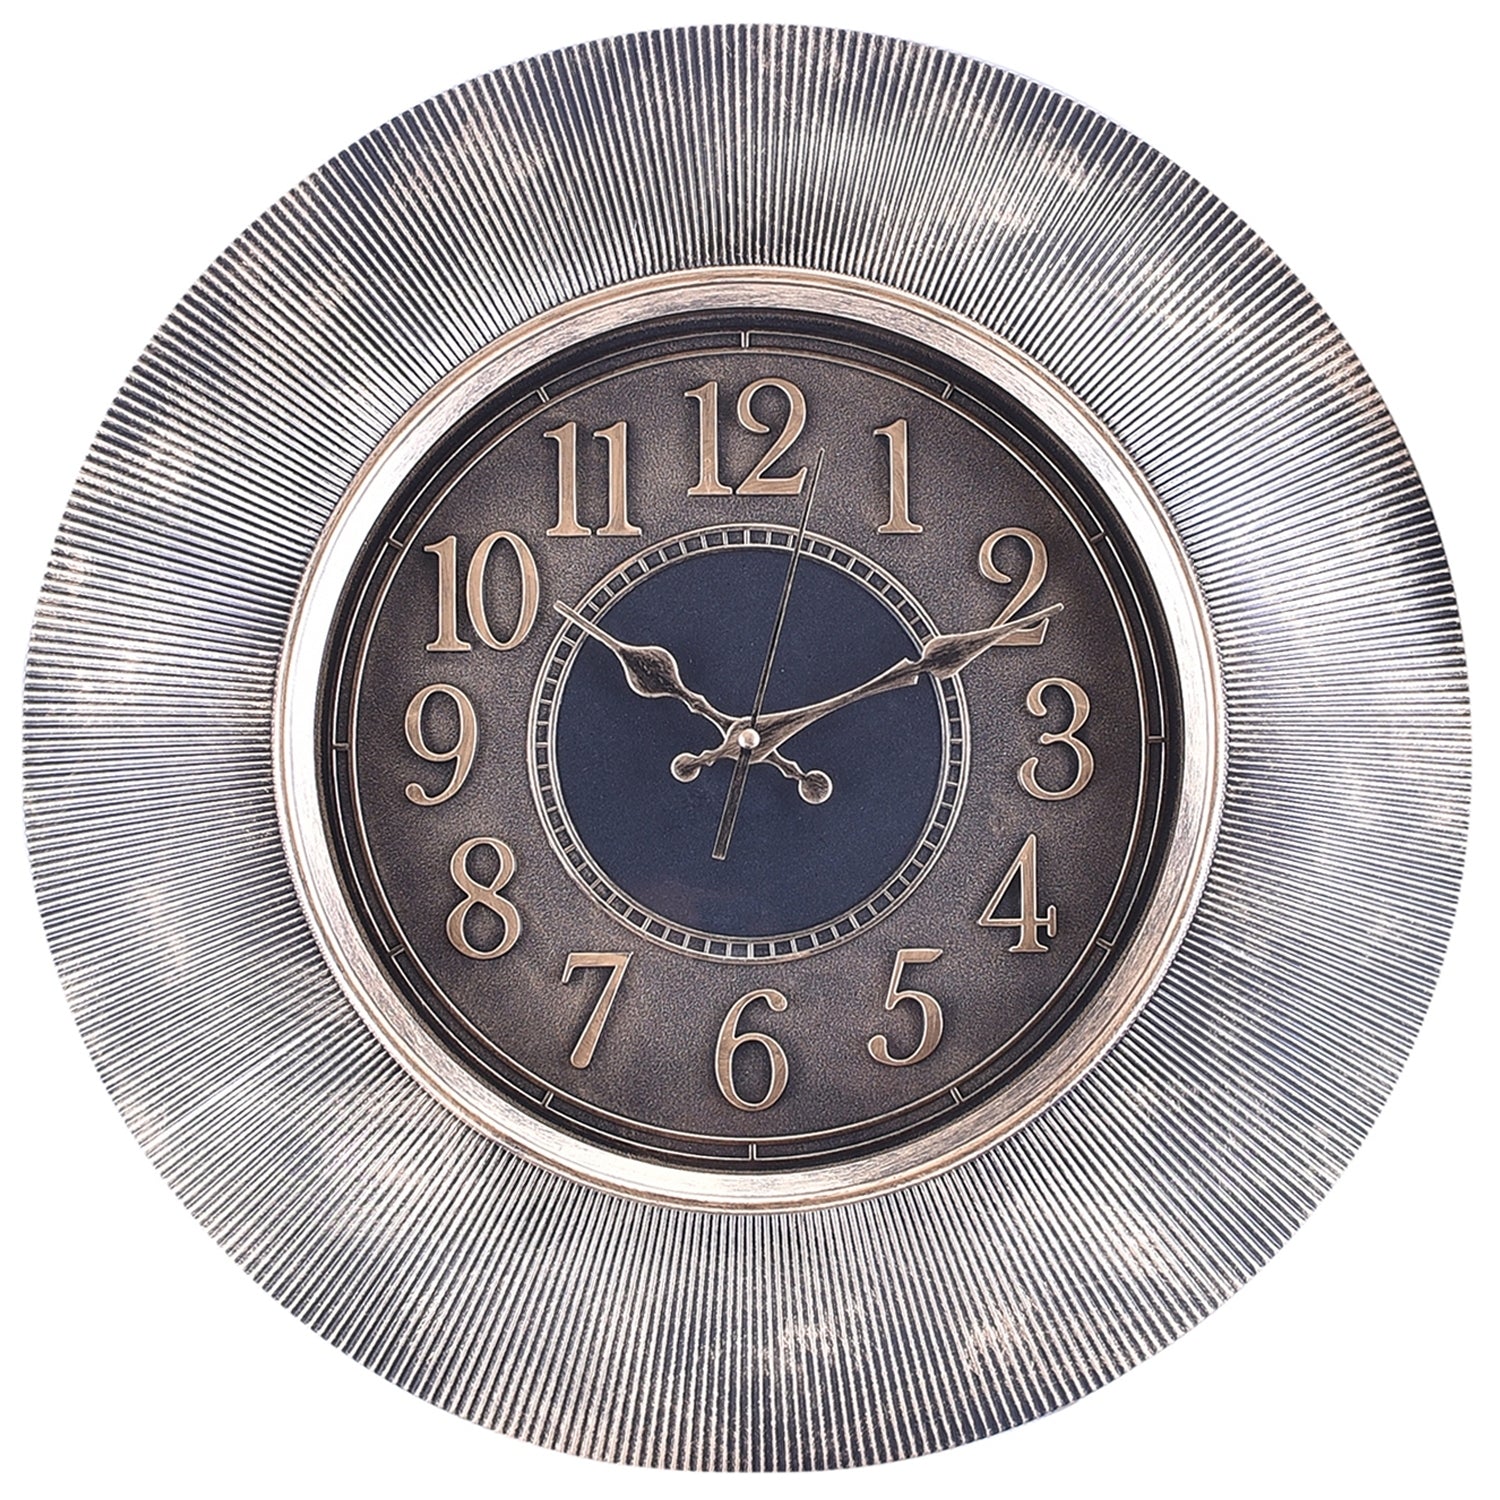 Premium Antique Design Analog Wall Clock 12